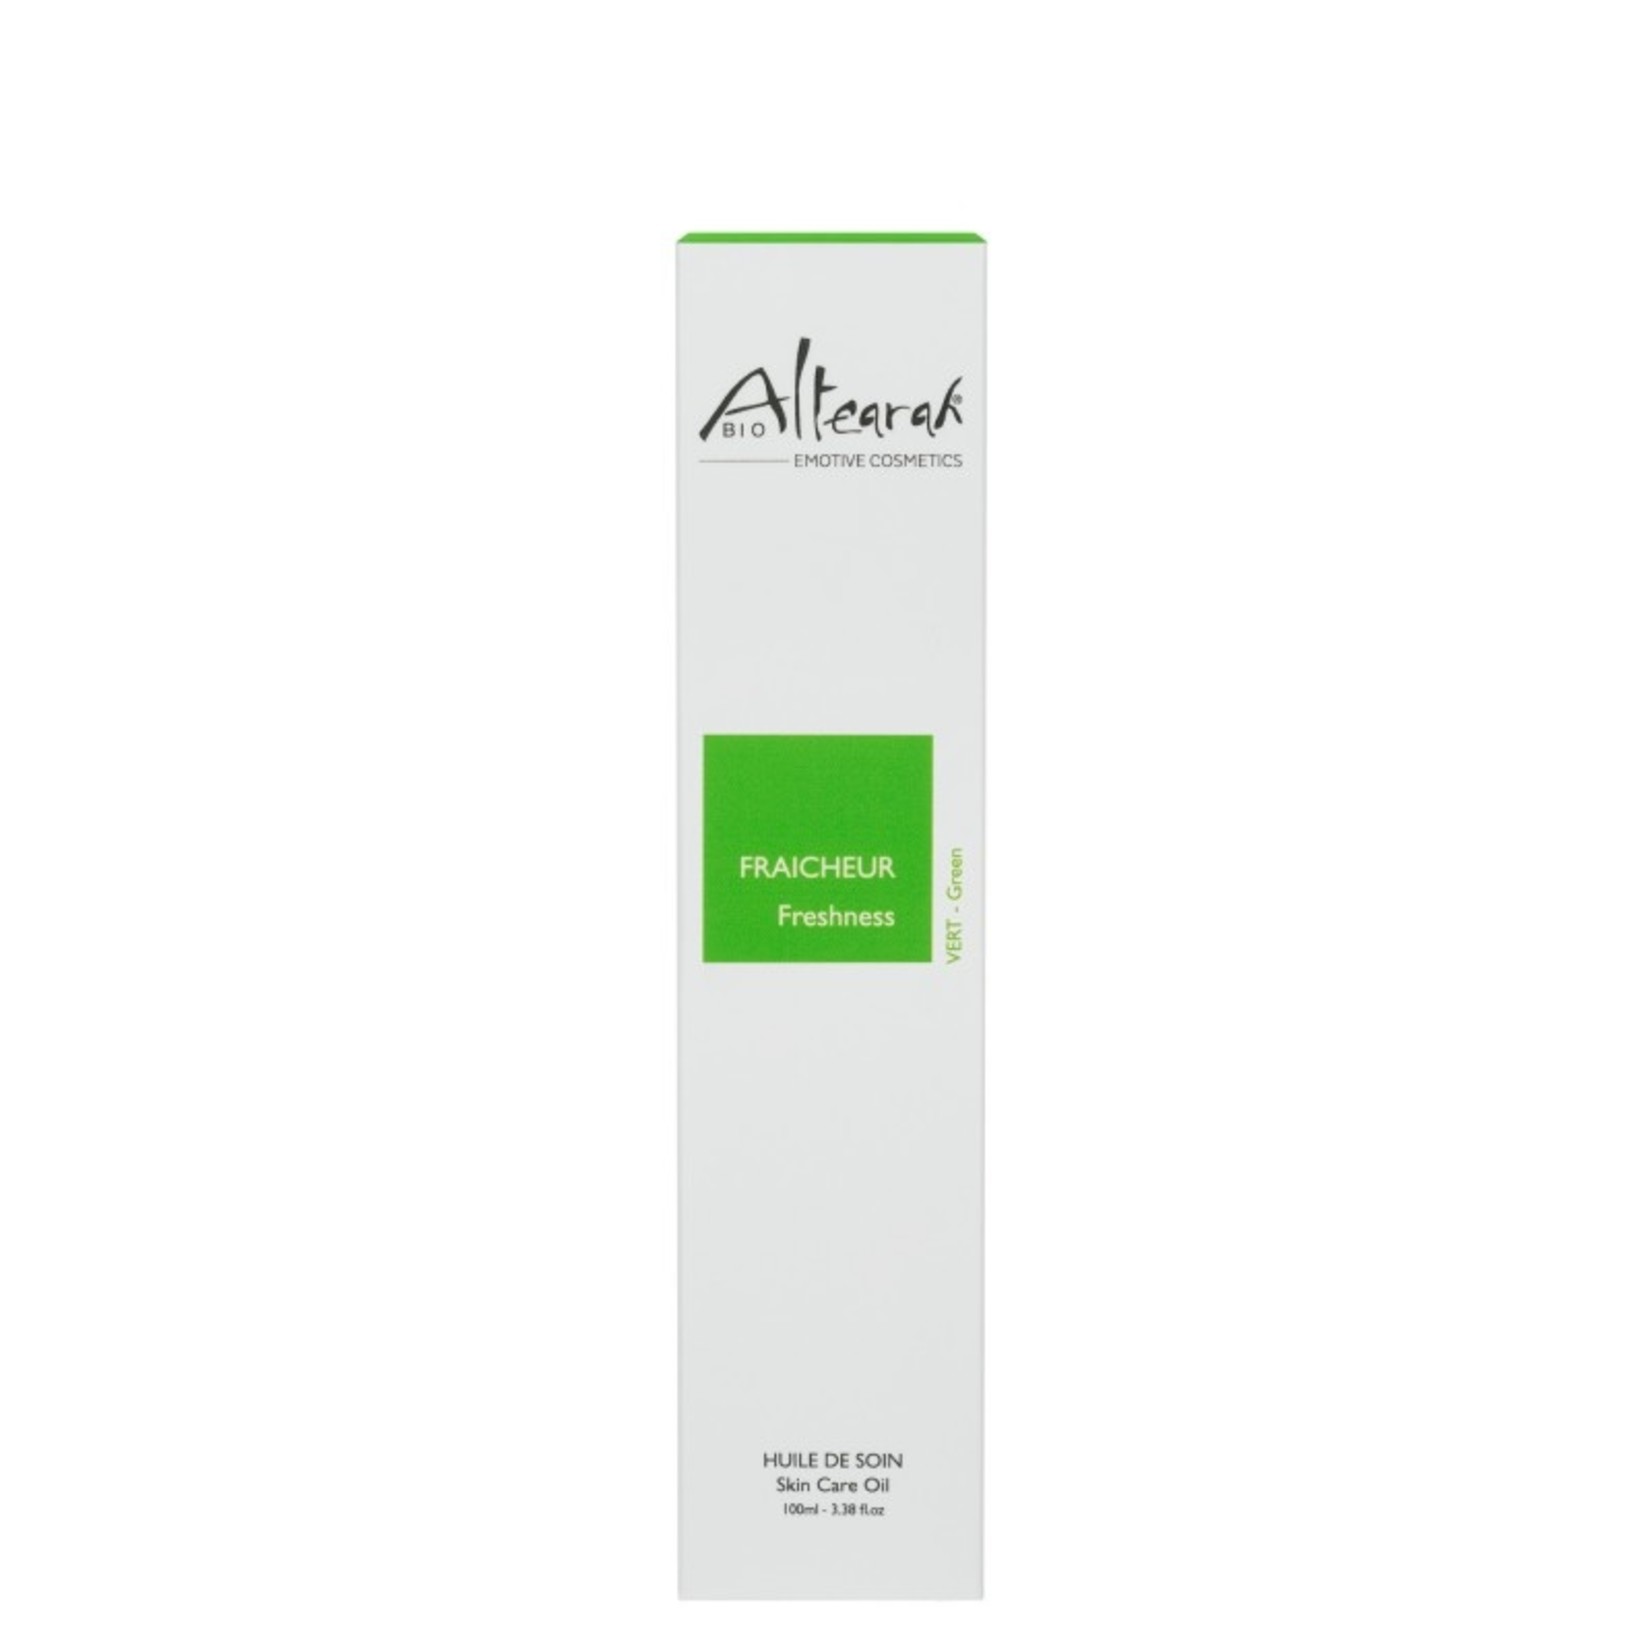 Altearah Skin Care Oil - (Green) Freshness